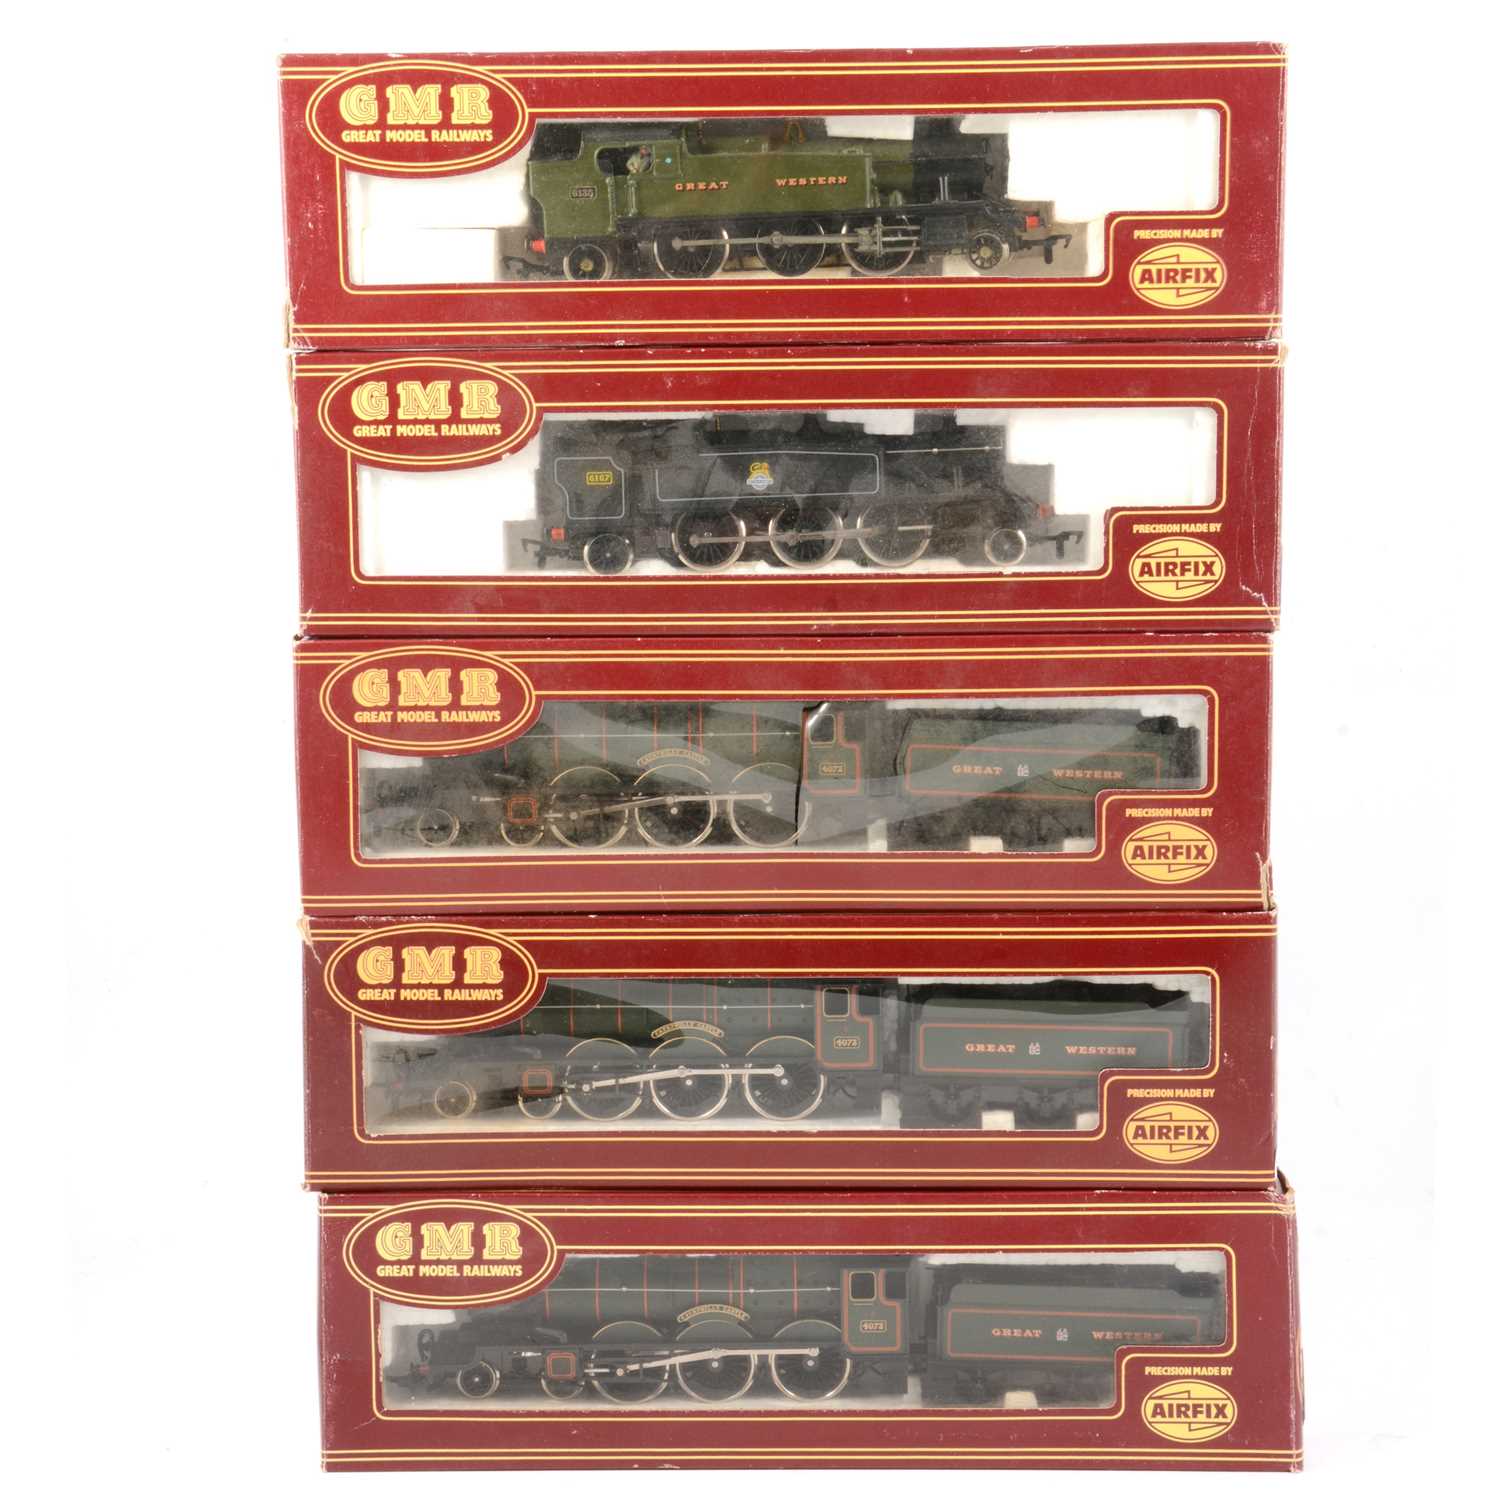 Lot 38 - Five Airfix OO gauge model railway locomotives